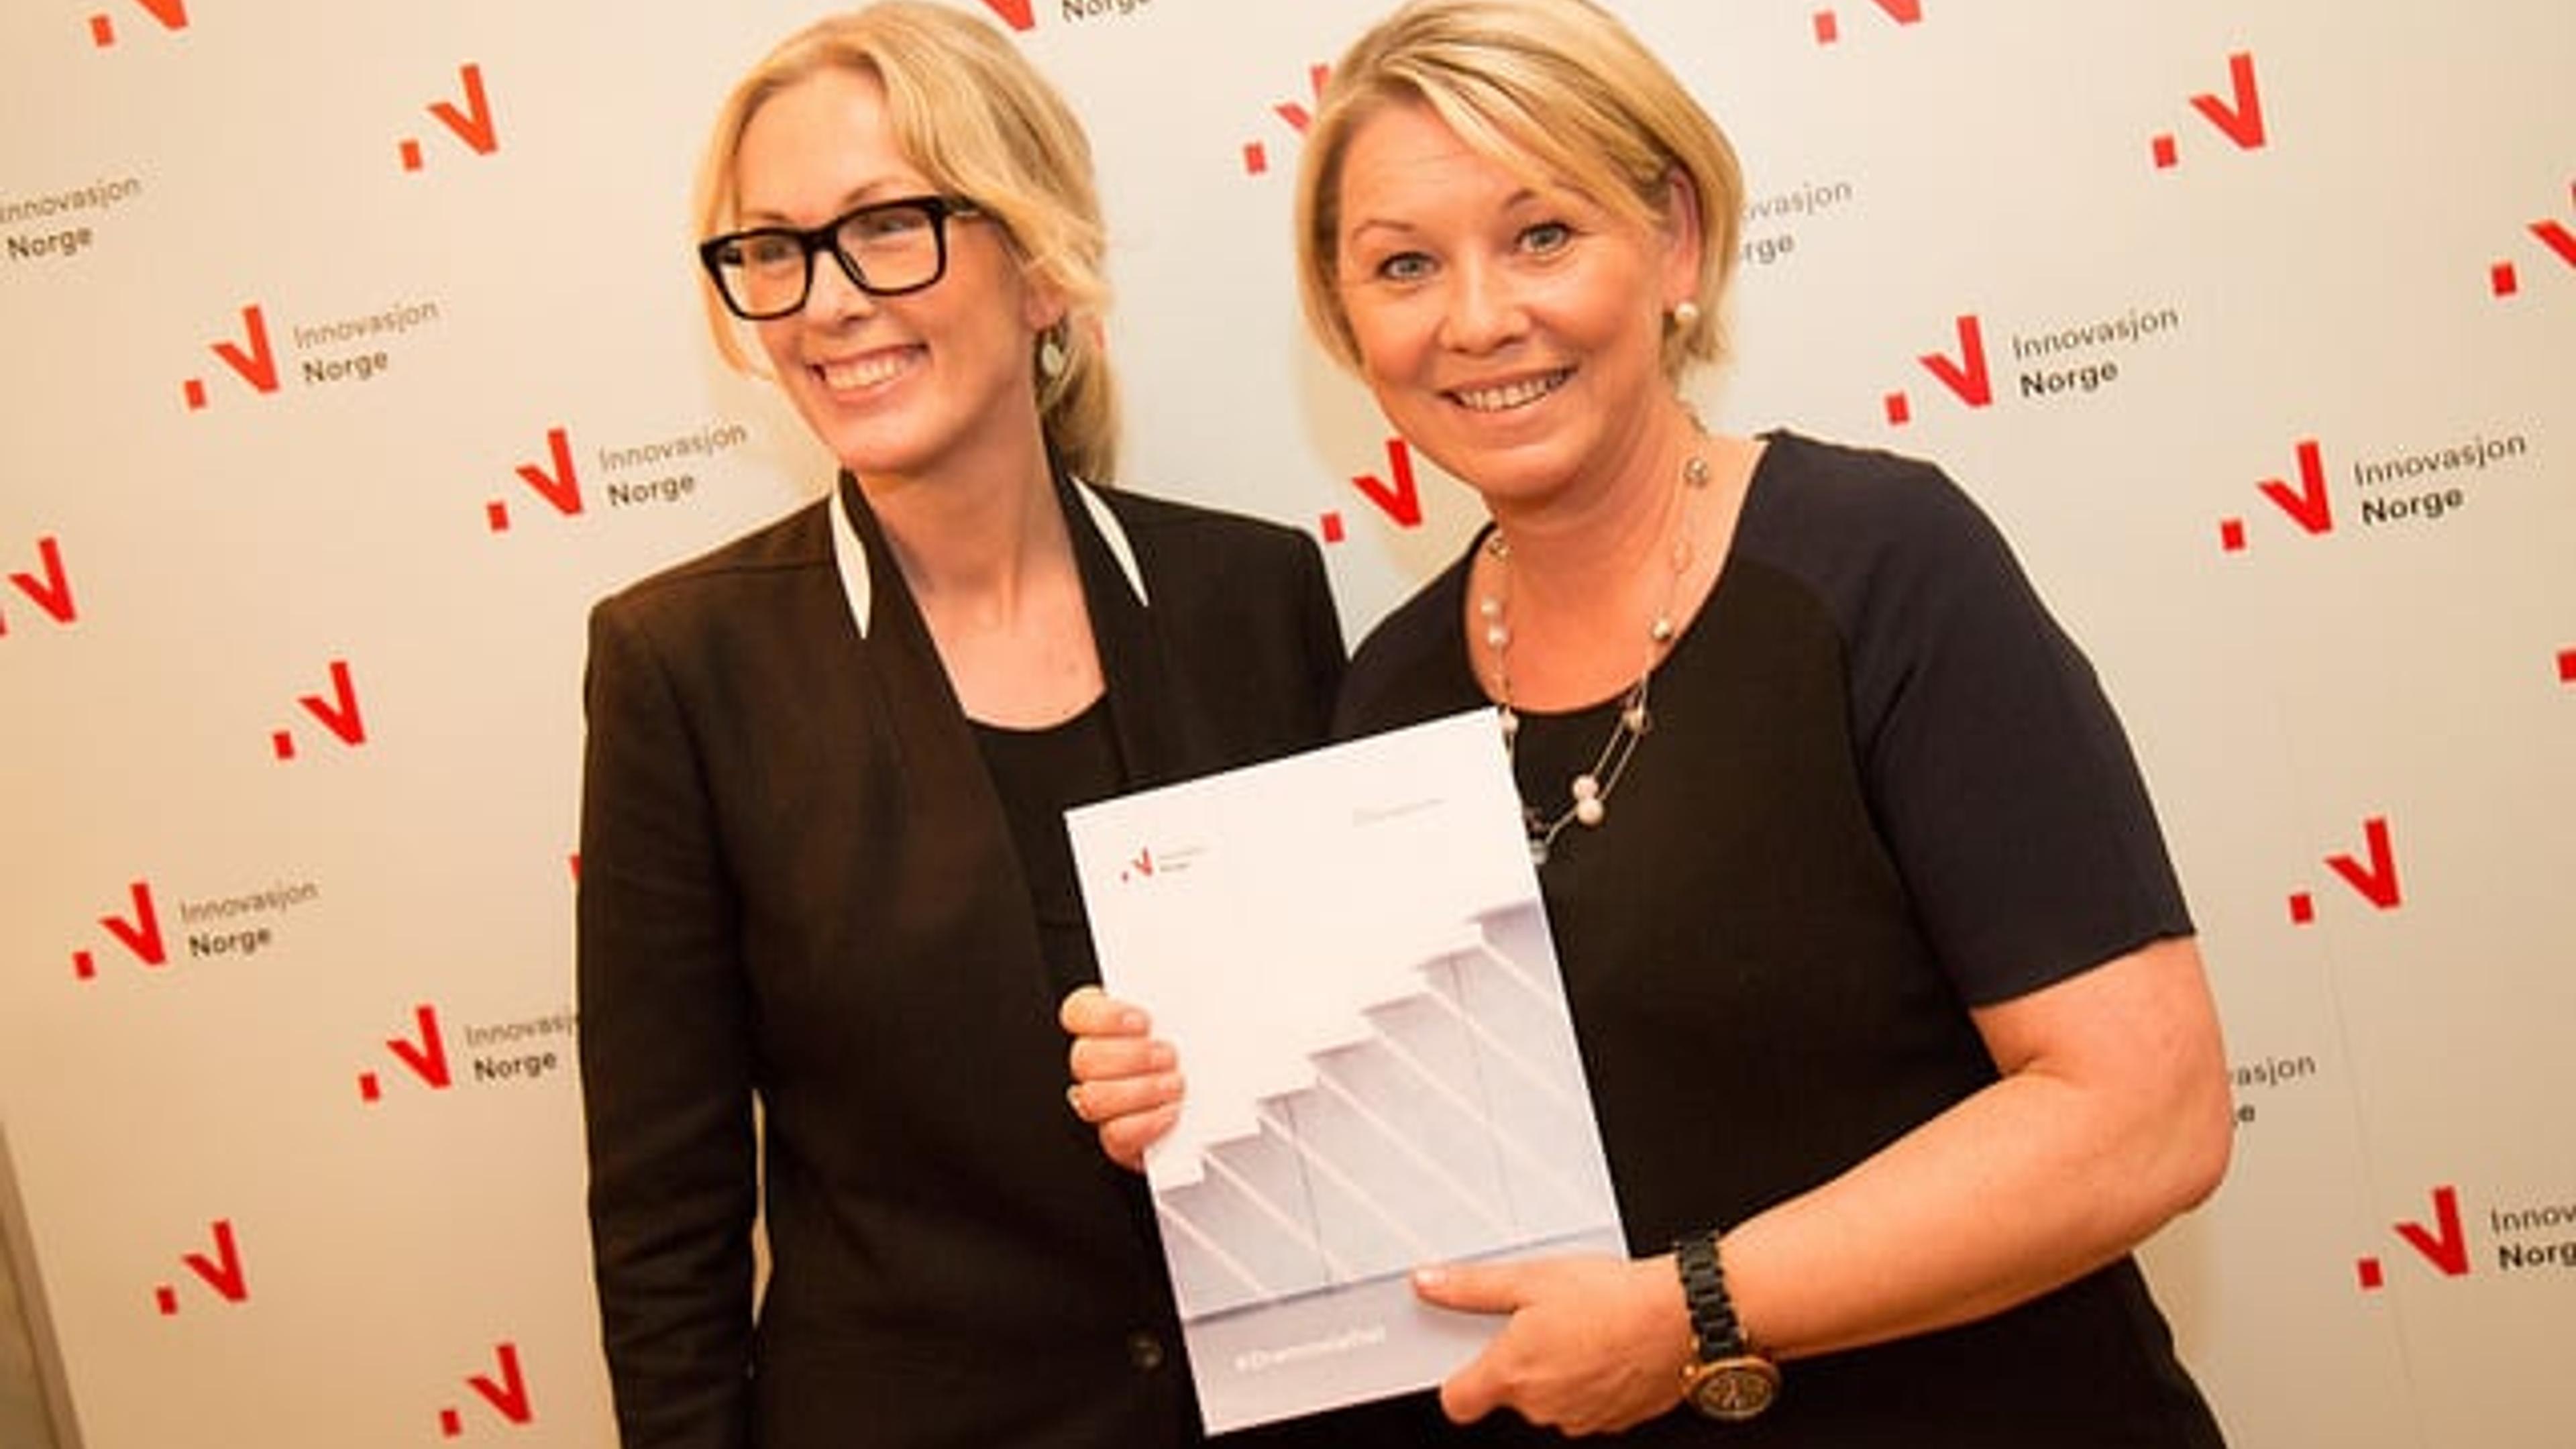 næringsminister Monica Mæland aom får overrukket Drømmeløftrapporten av Anita Krohn Traaseth